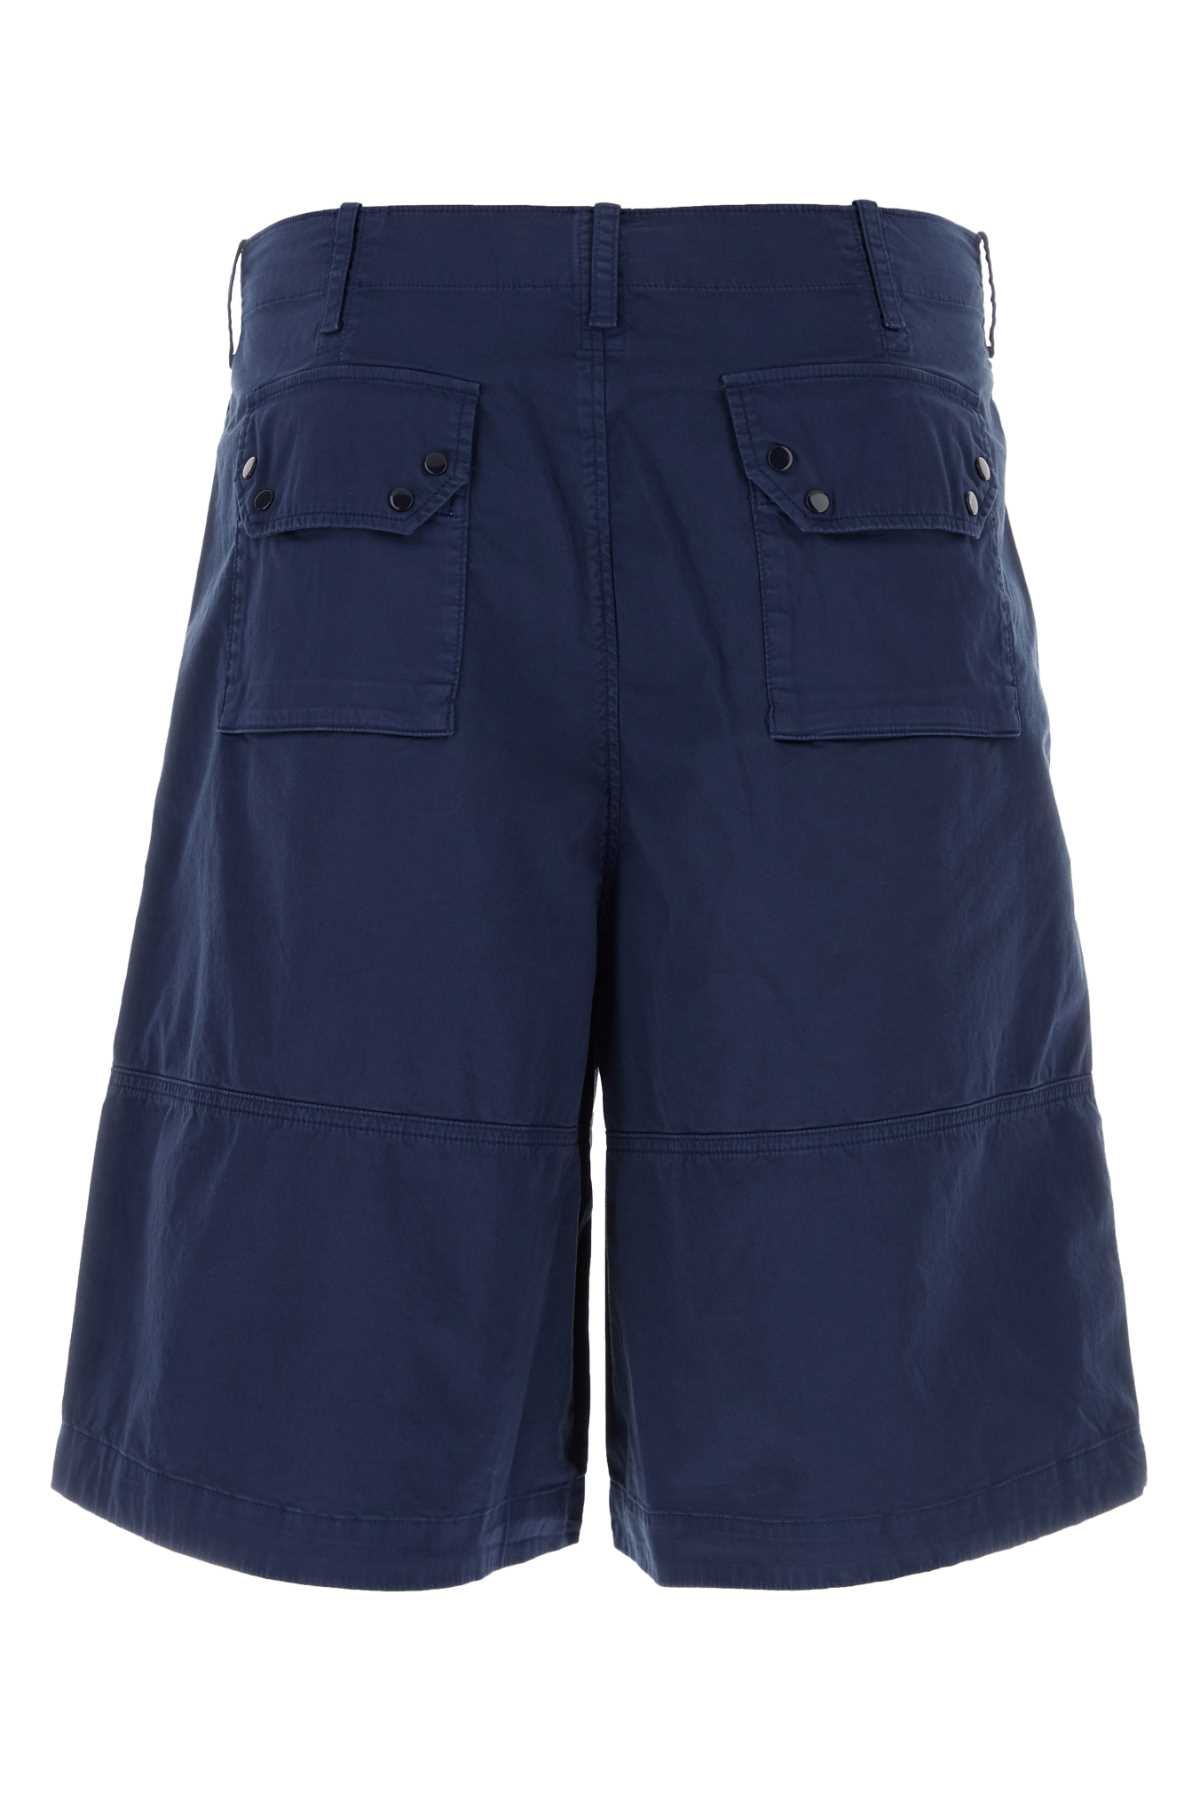 Ten C Blue Stretch Cotton Bermuda Shorts In Blunotte